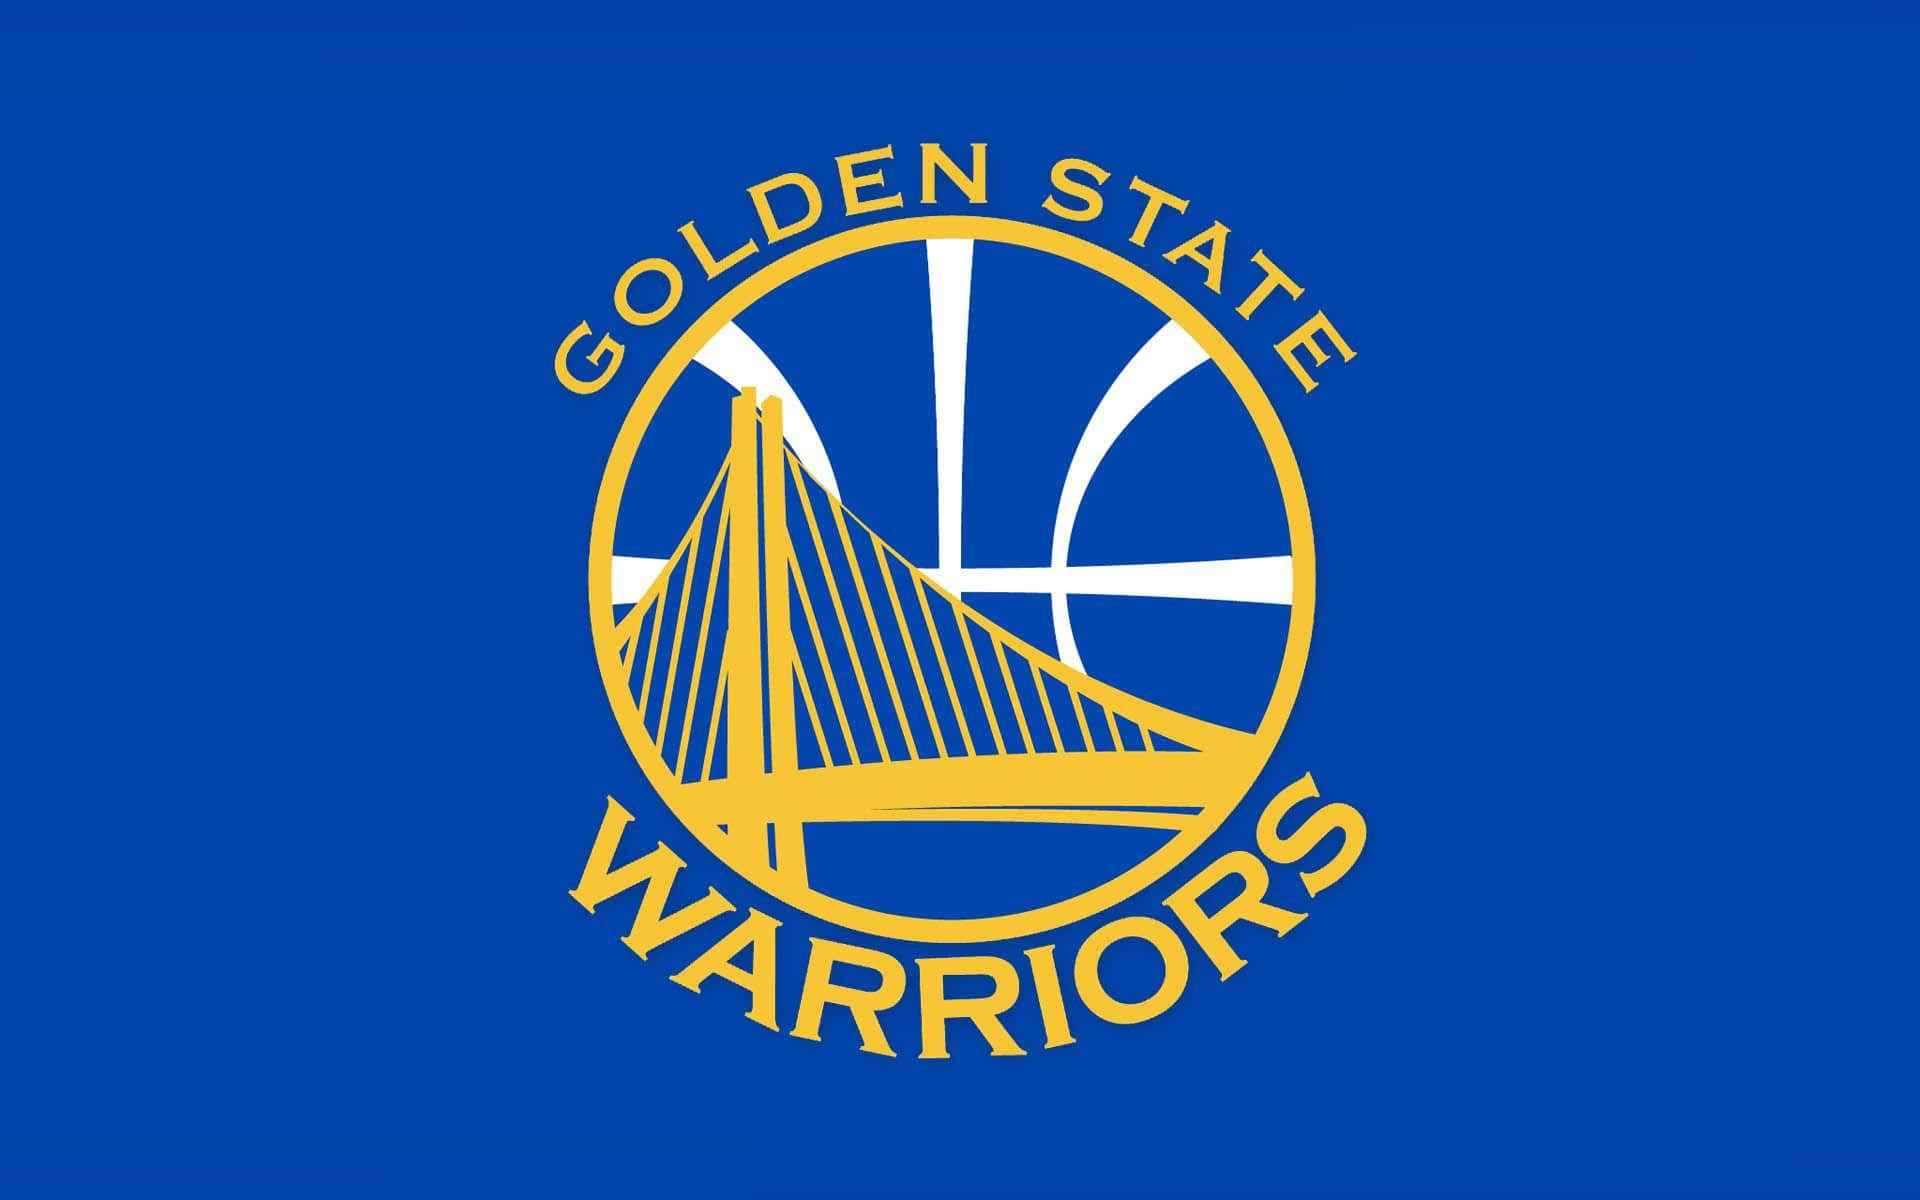 Denofficiella Logotypen För Golden State Warriors Med Den Ikoniska Blåa Och Gula Gsw:n. Wallpaper